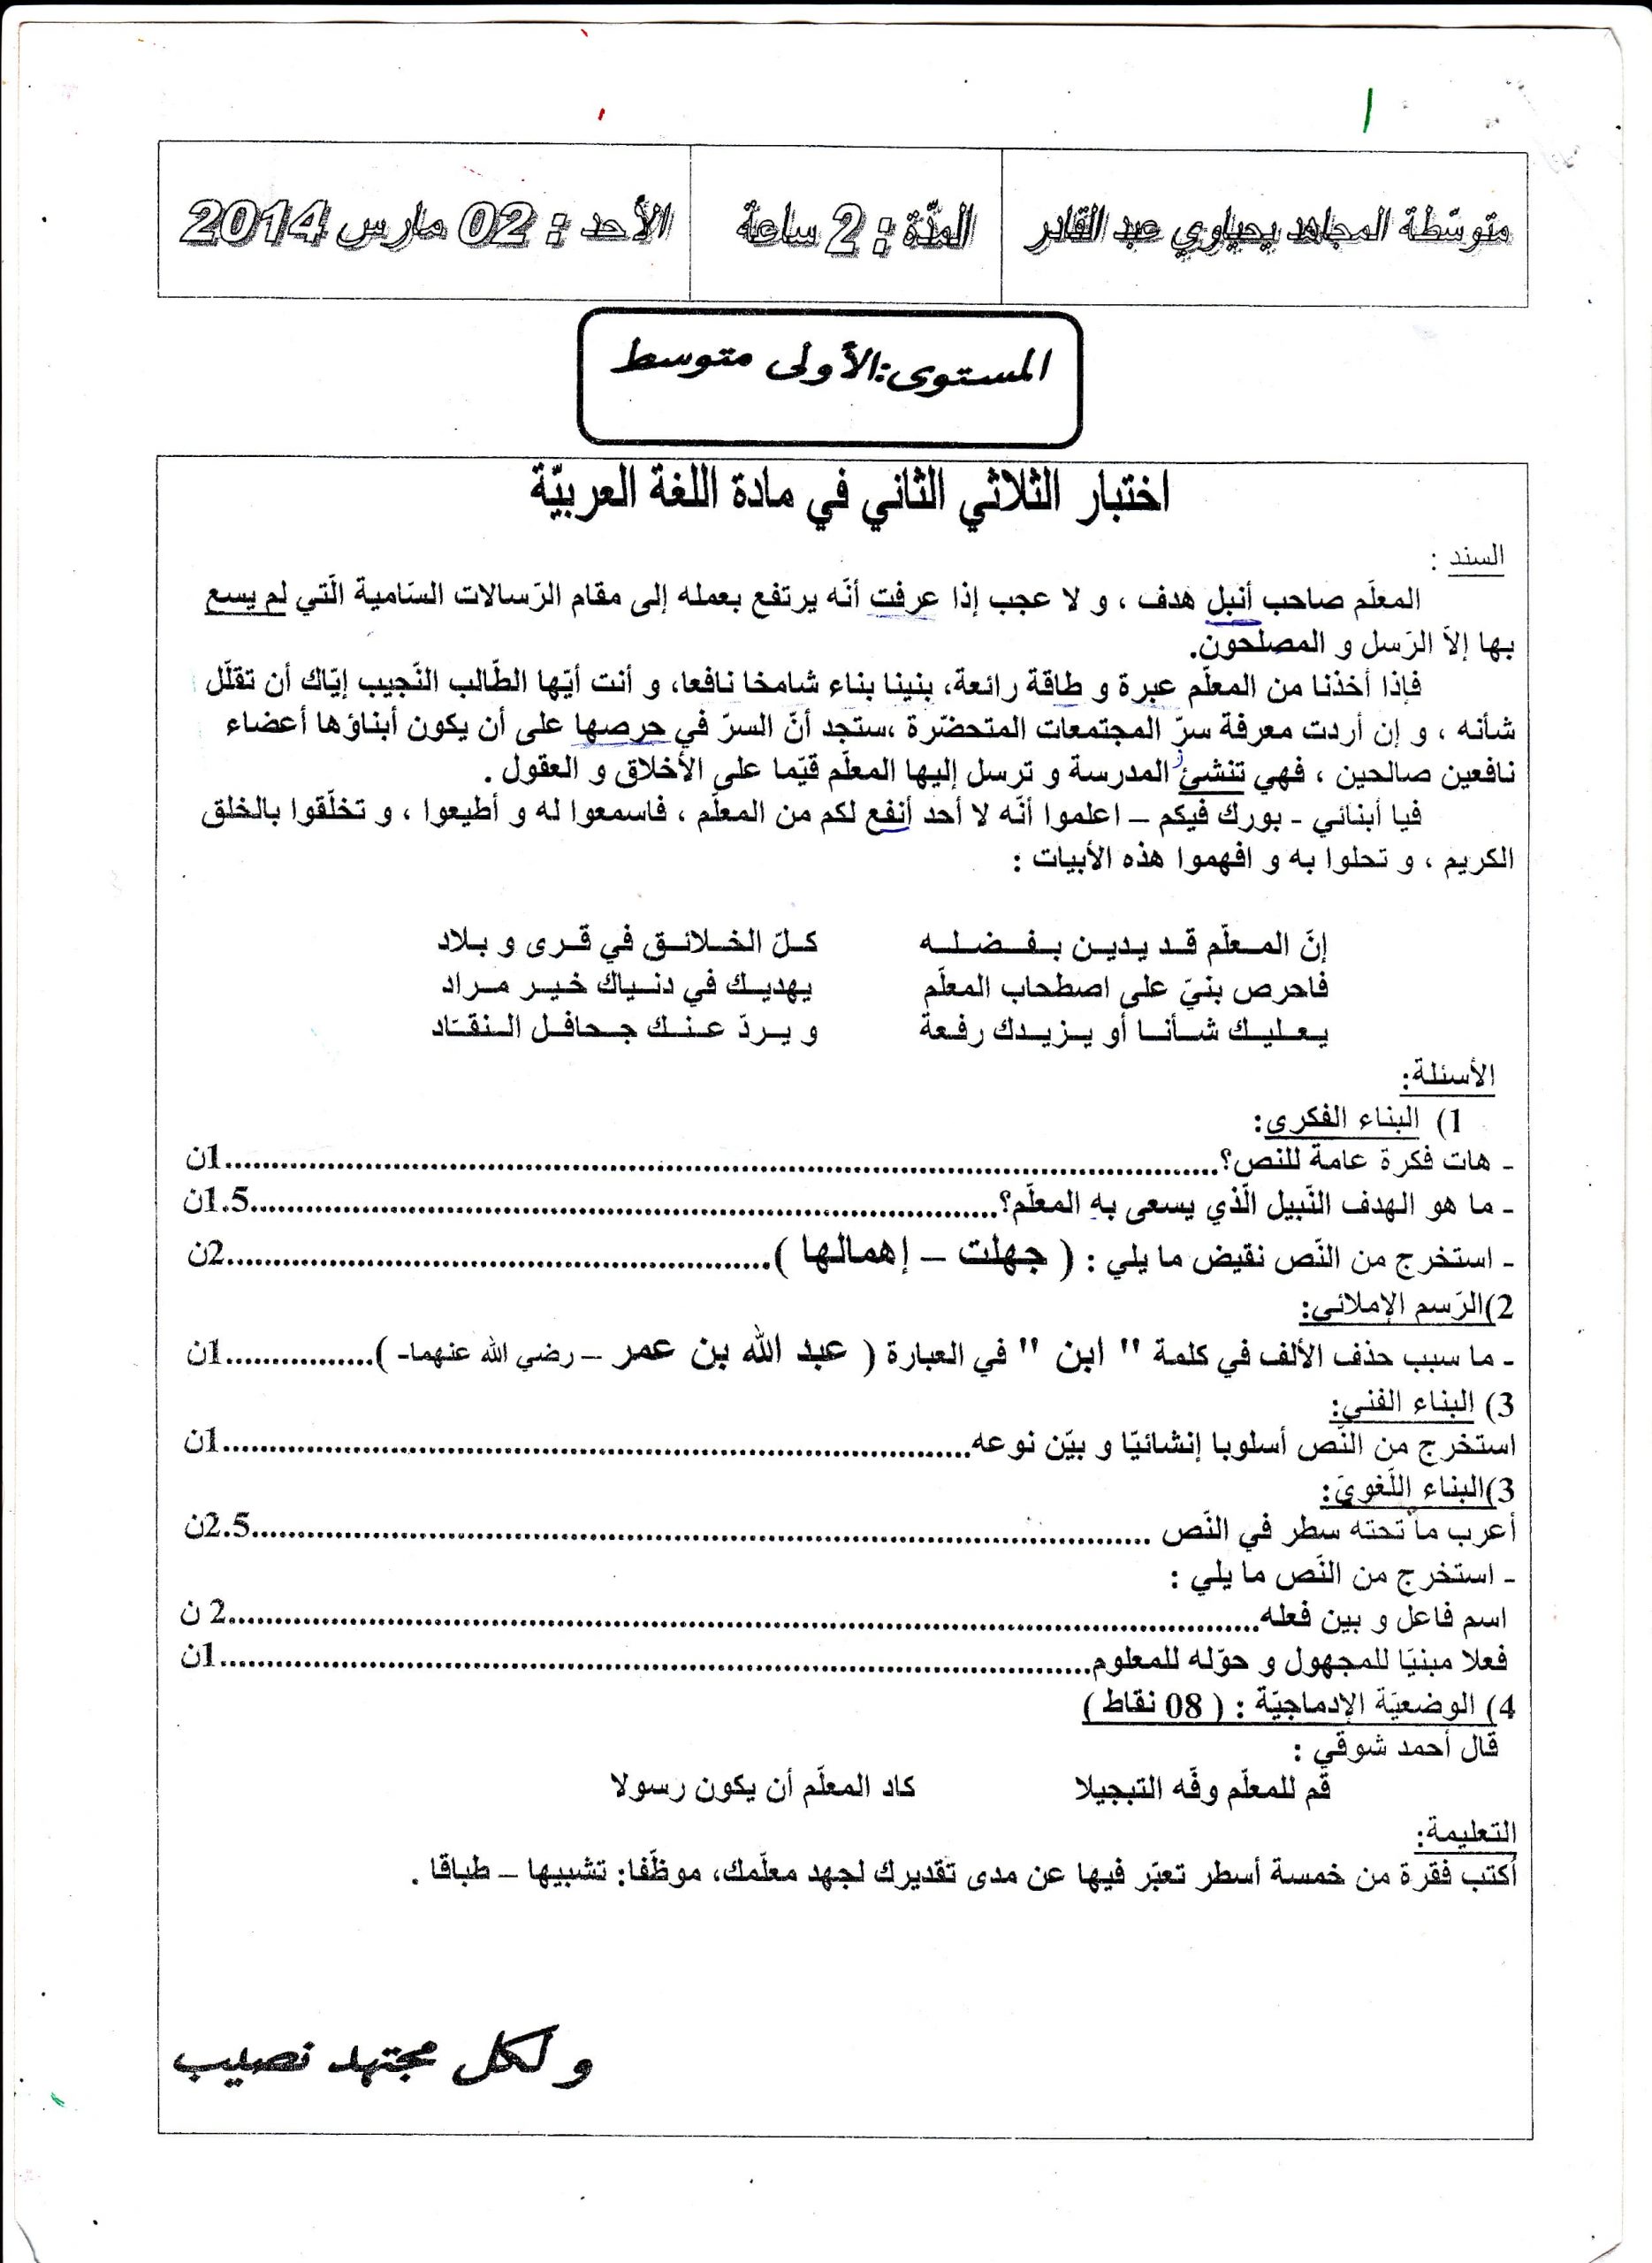 إختبار الفصل الثاني في مادة اللغة العربية للسنة الأولى متوسط